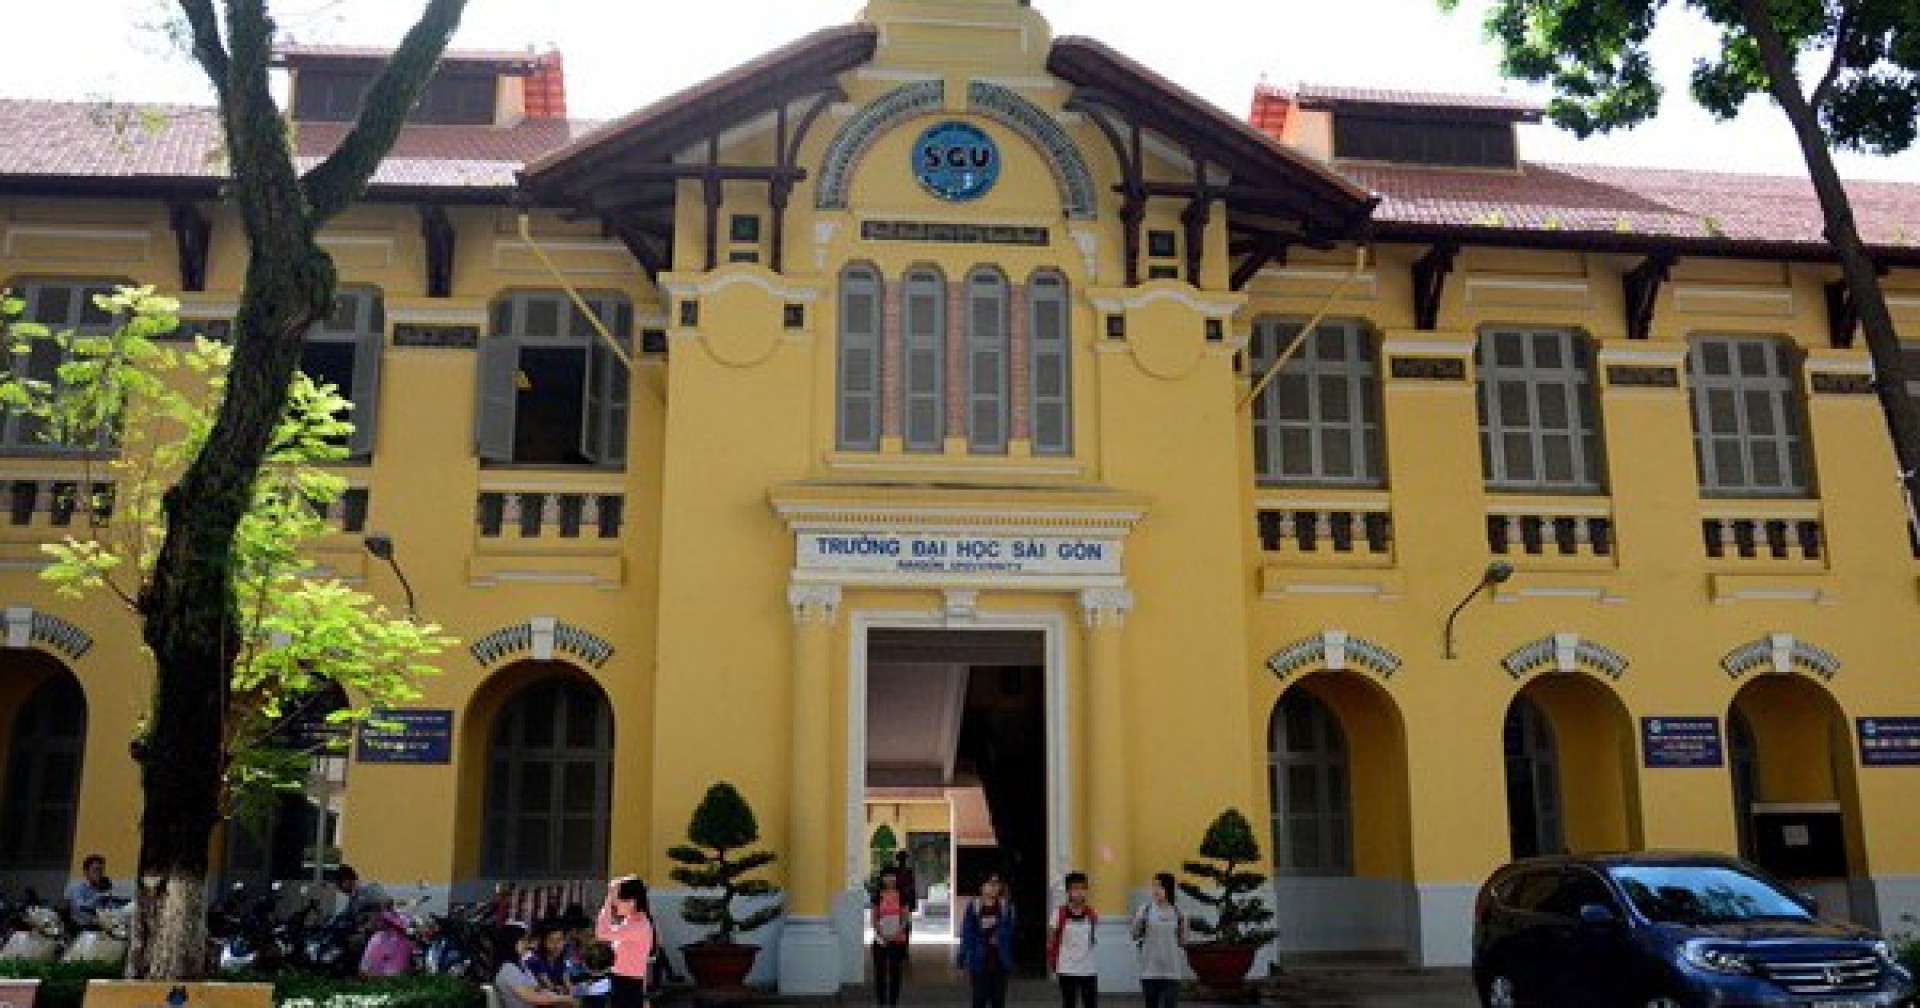 Những điều bạn sẽ nhận được khi học ở ngôi trường cổ nhất Sài Gòn